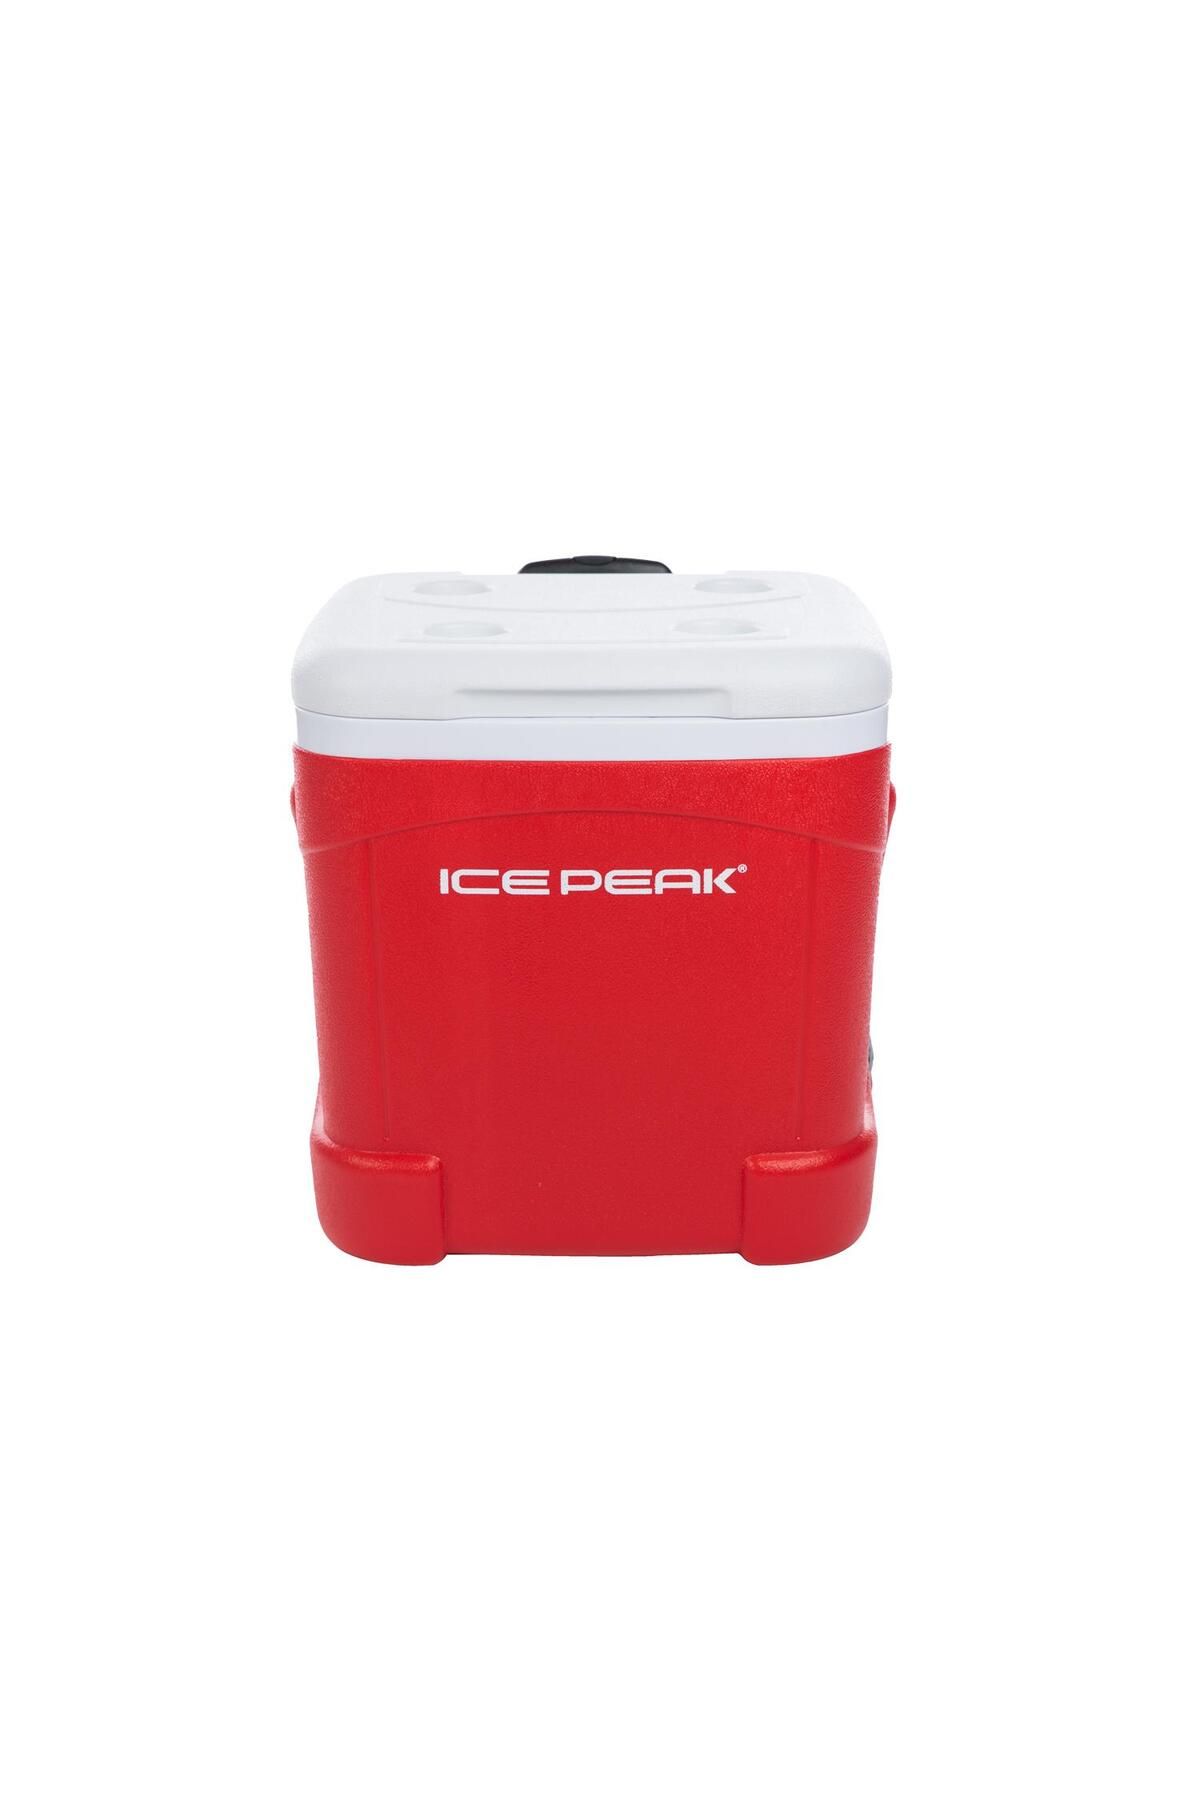 Icepeak Icecube Tekerlekli Buzluk 55 Litre-kırmızı